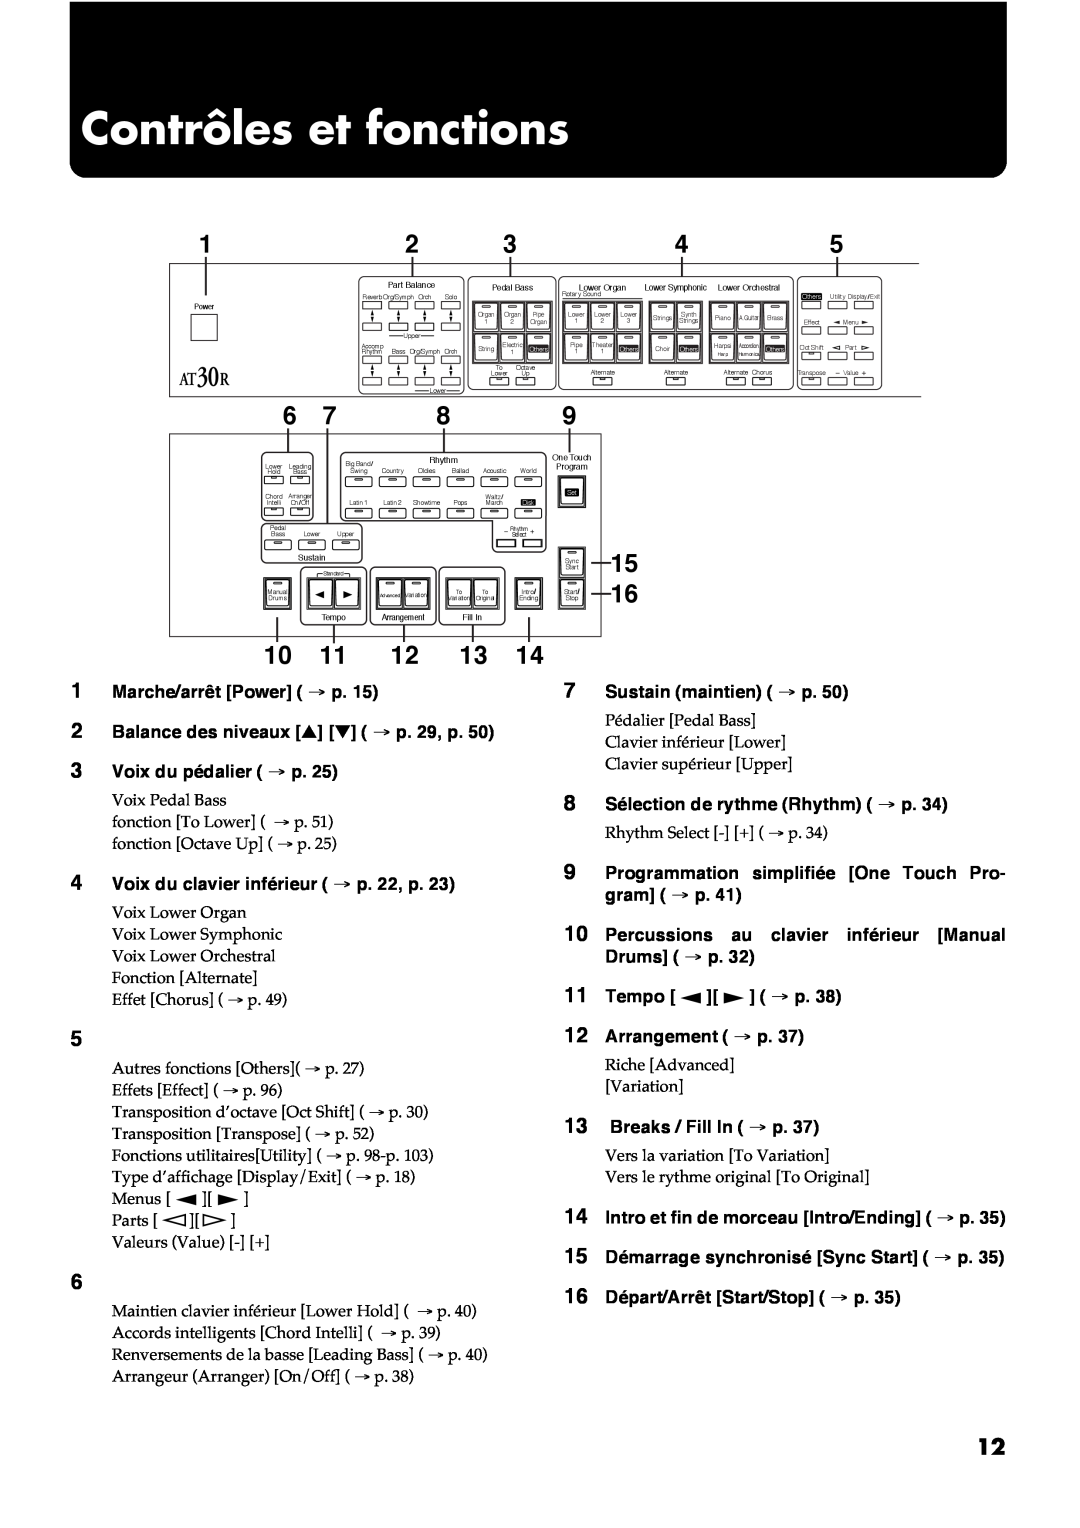 Roland AT30R manual Contrôles et fonctions, 10 11 12 13 